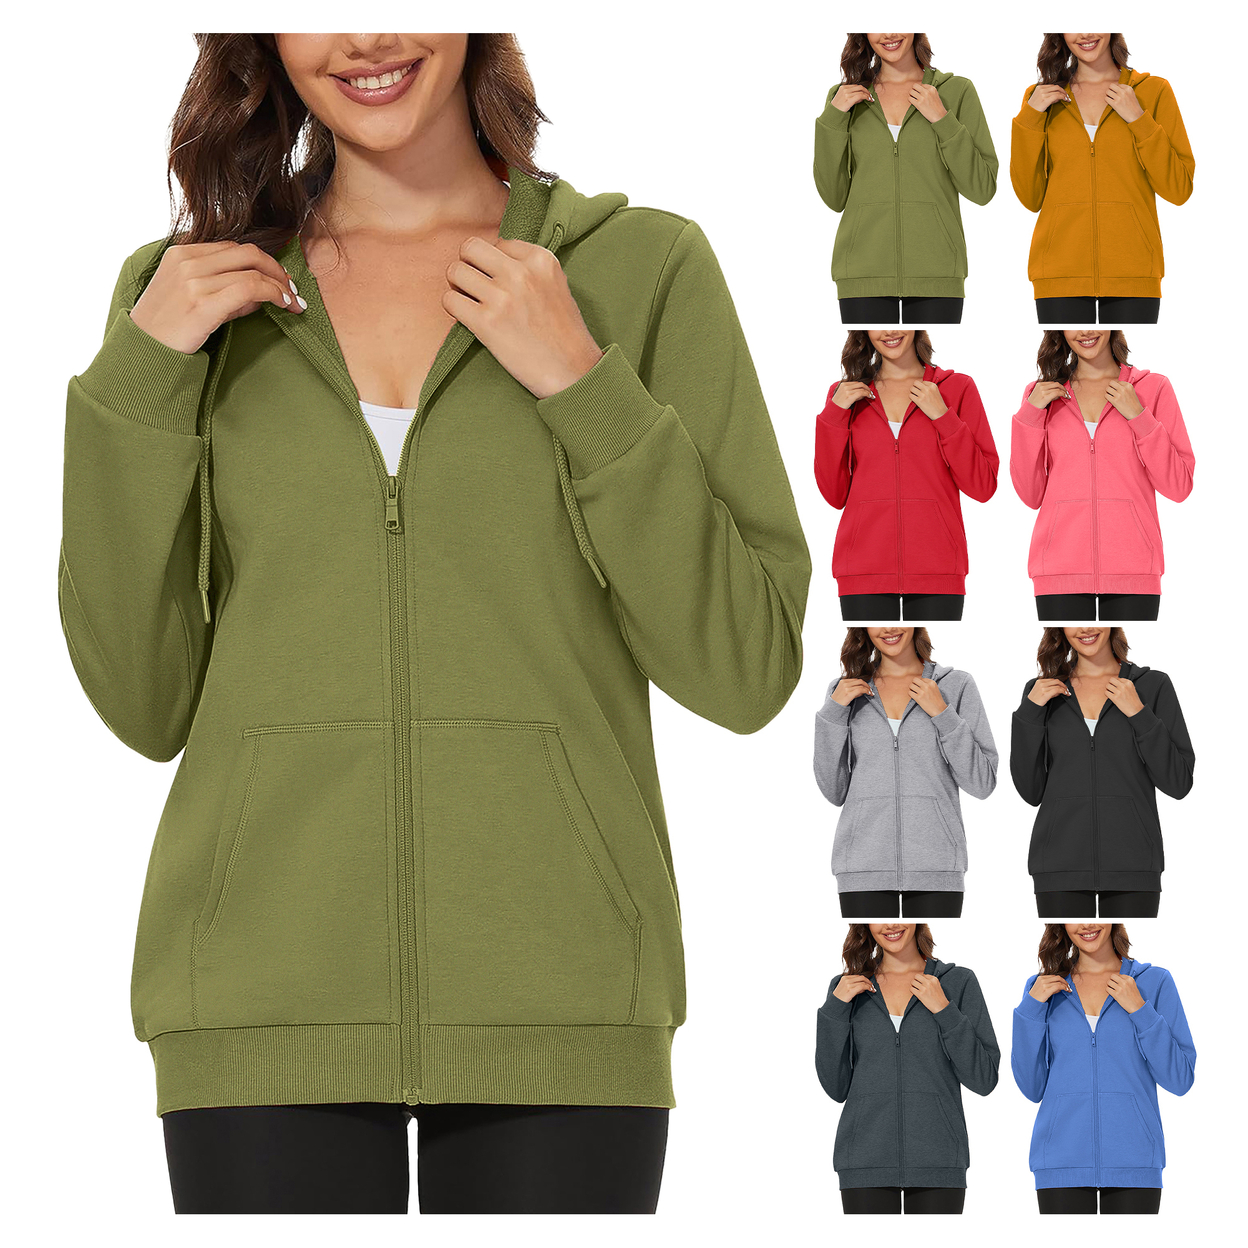 2-Pack: Women's Winter Warm Soft Blend Fleece Lined Full Zip Up Hoodies - Xx-large